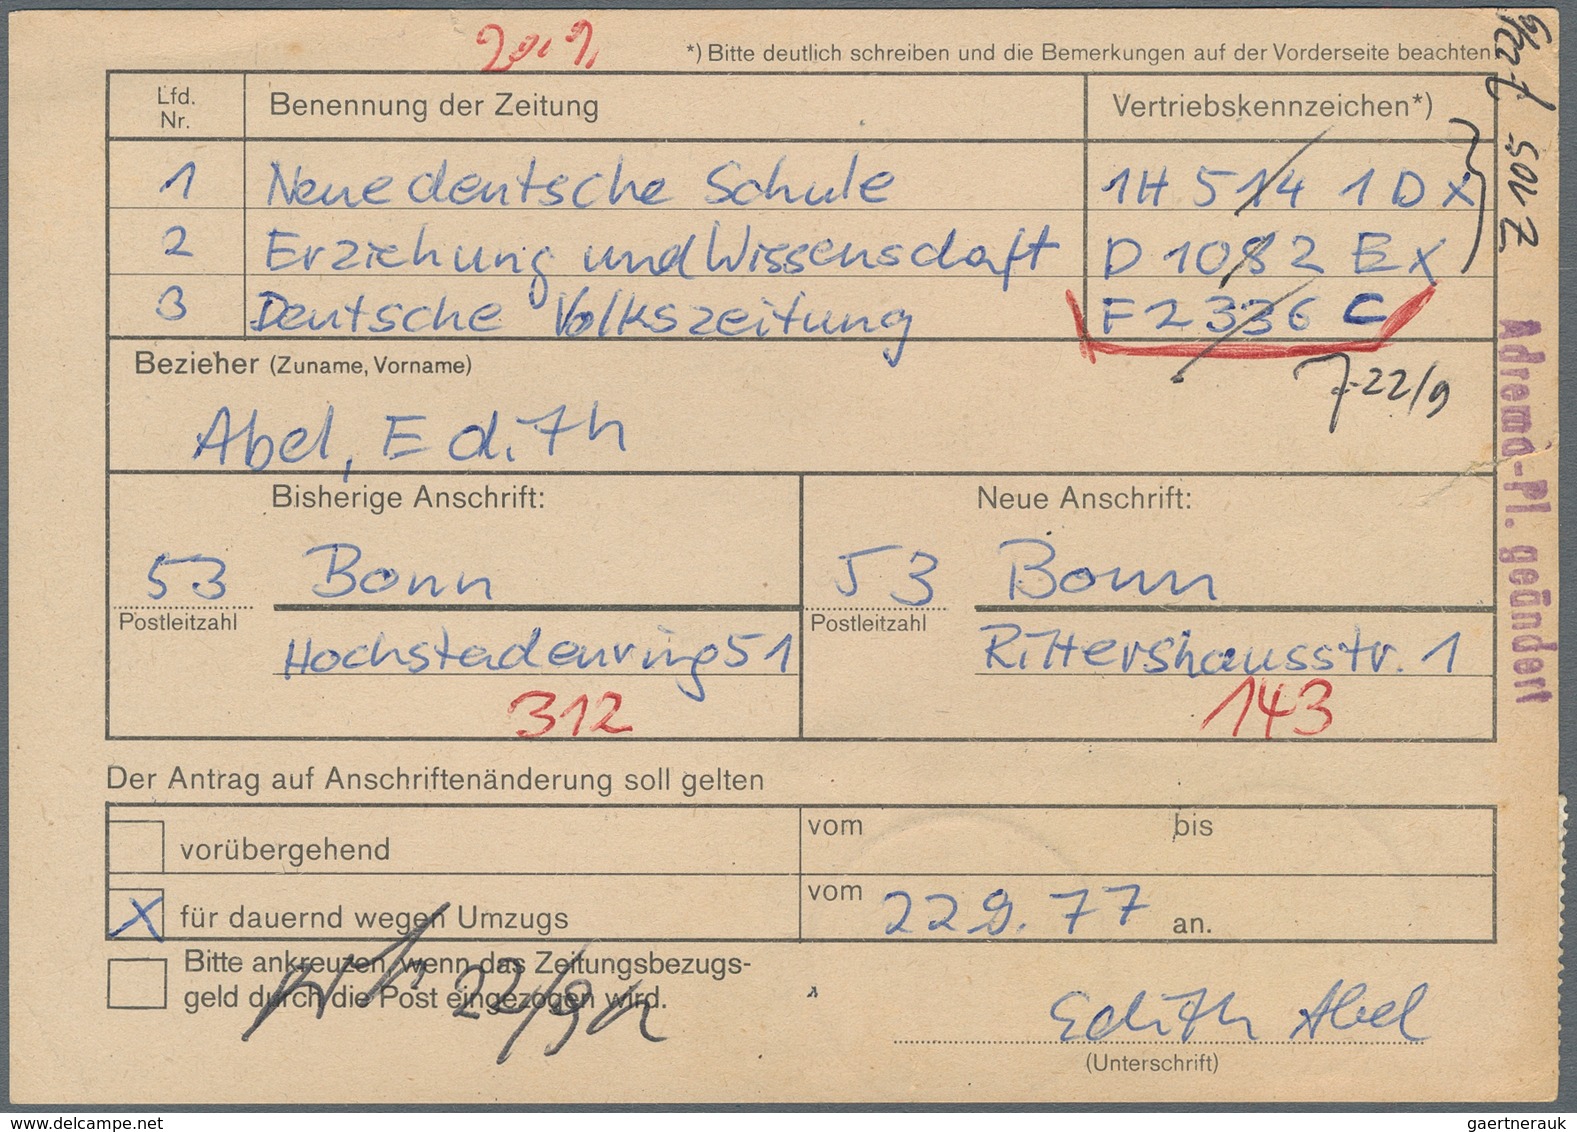 Bundesrepublik Deutschland: 1977, Senkrechter Dreierstreifen 90 Pfg. Kant Auf Antrag Auf Anschriften - Covers & Documents